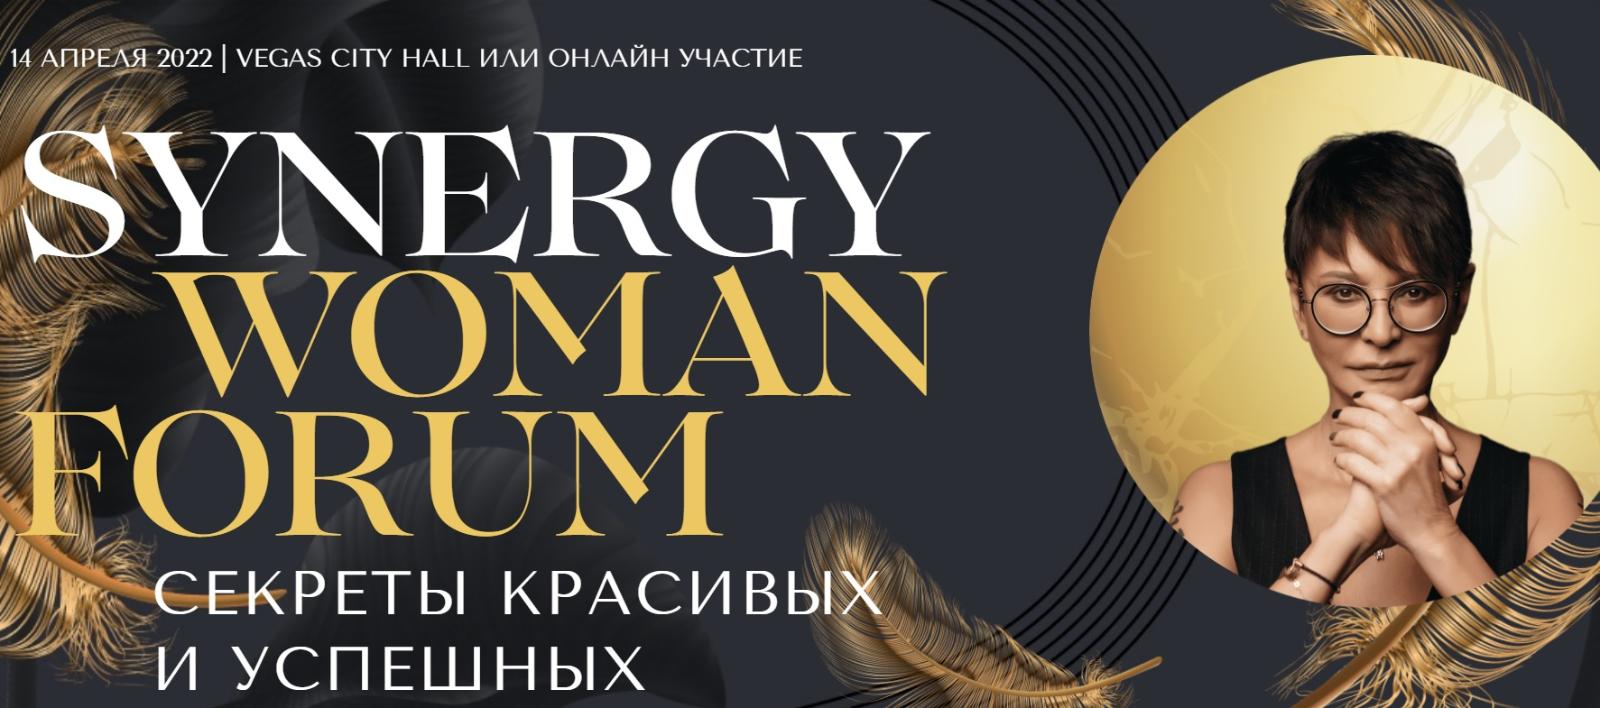 В Москве пройдет пятый юбилейный Synergy Woman Forum